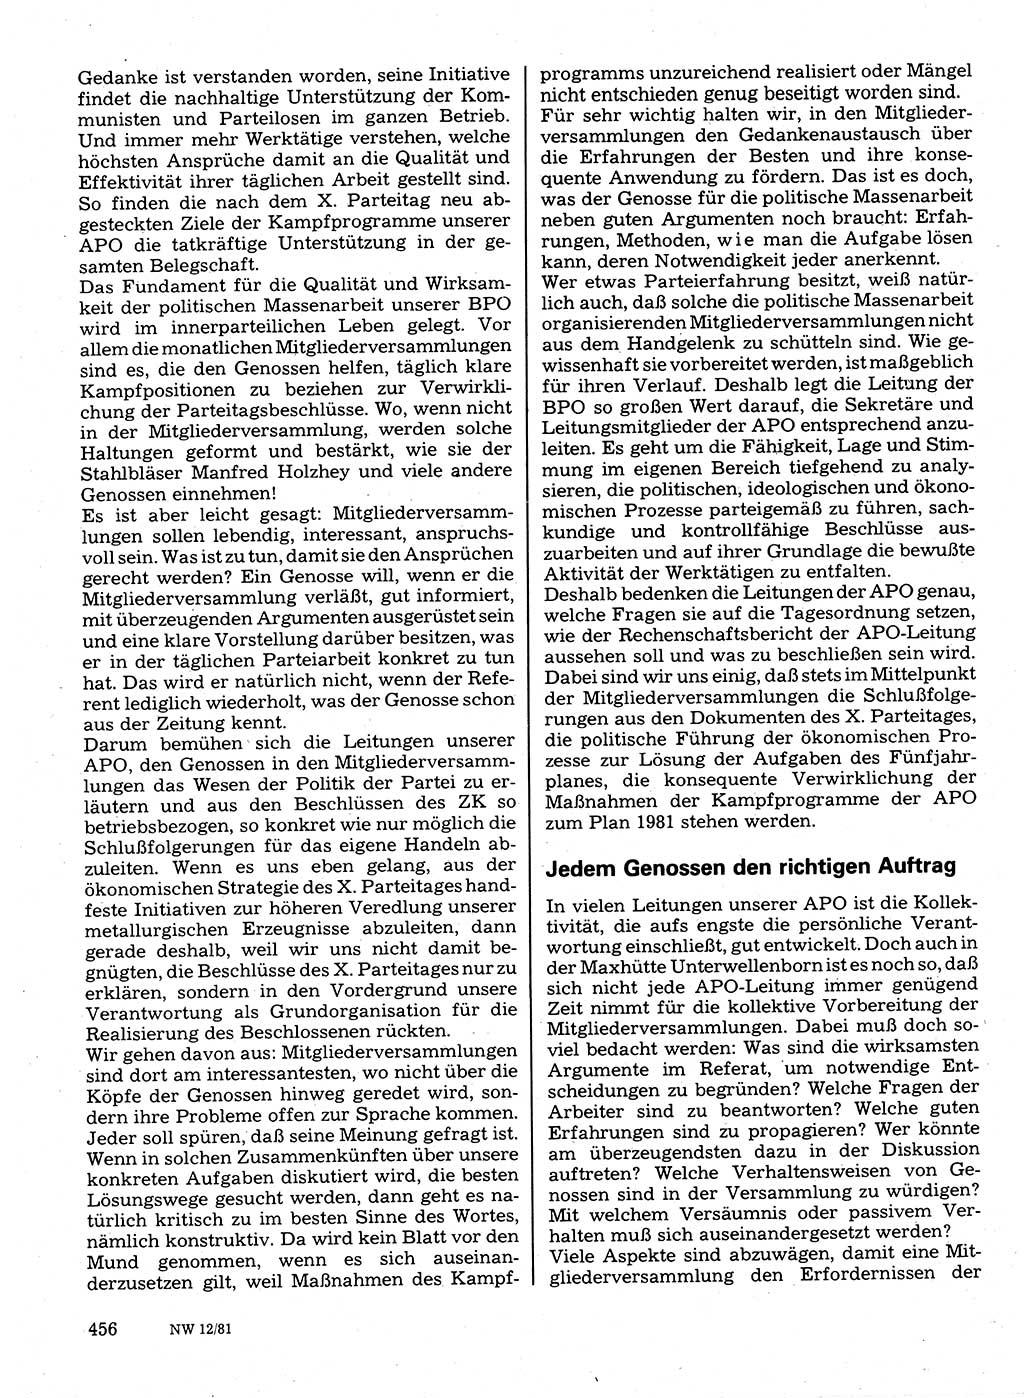 Neuer Weg (NW), Organ des Zentralkomitees (ZK) der SED (Sozialistische Einheitspartei Deutschlands) für Fragen des Parteilebens, 36. Jahrgang [Deutsche Demokratische Republik (DDR)] 1981, Seite 456 (NW ZK SED DDR 1981, S. 456)